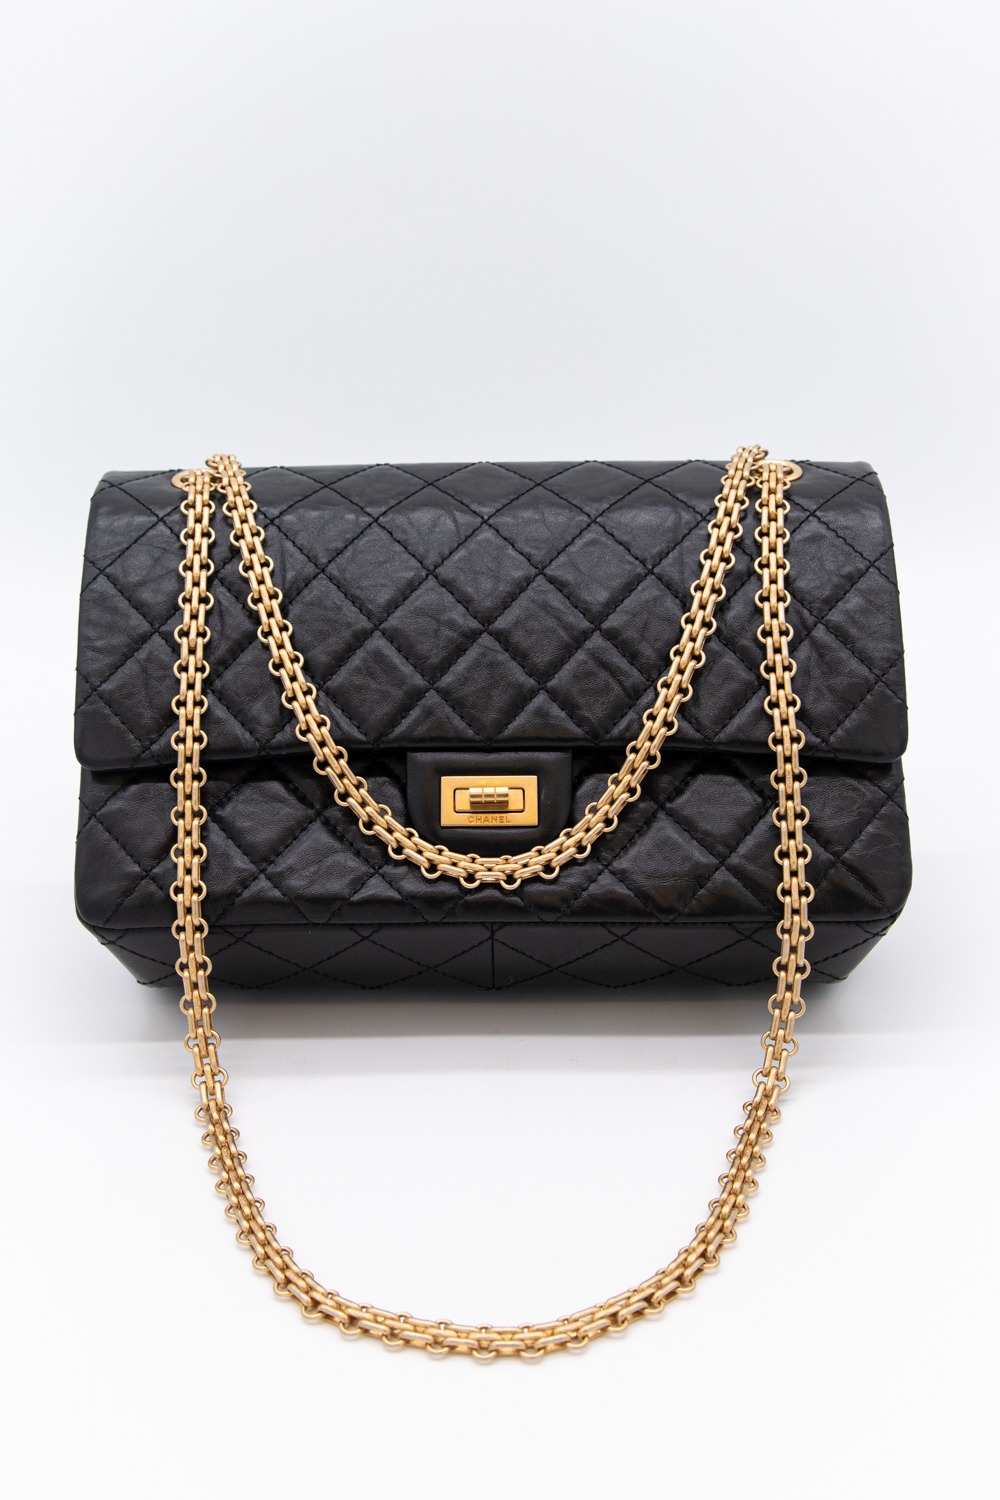 Chanel "2.55" Tasche in Schwarz